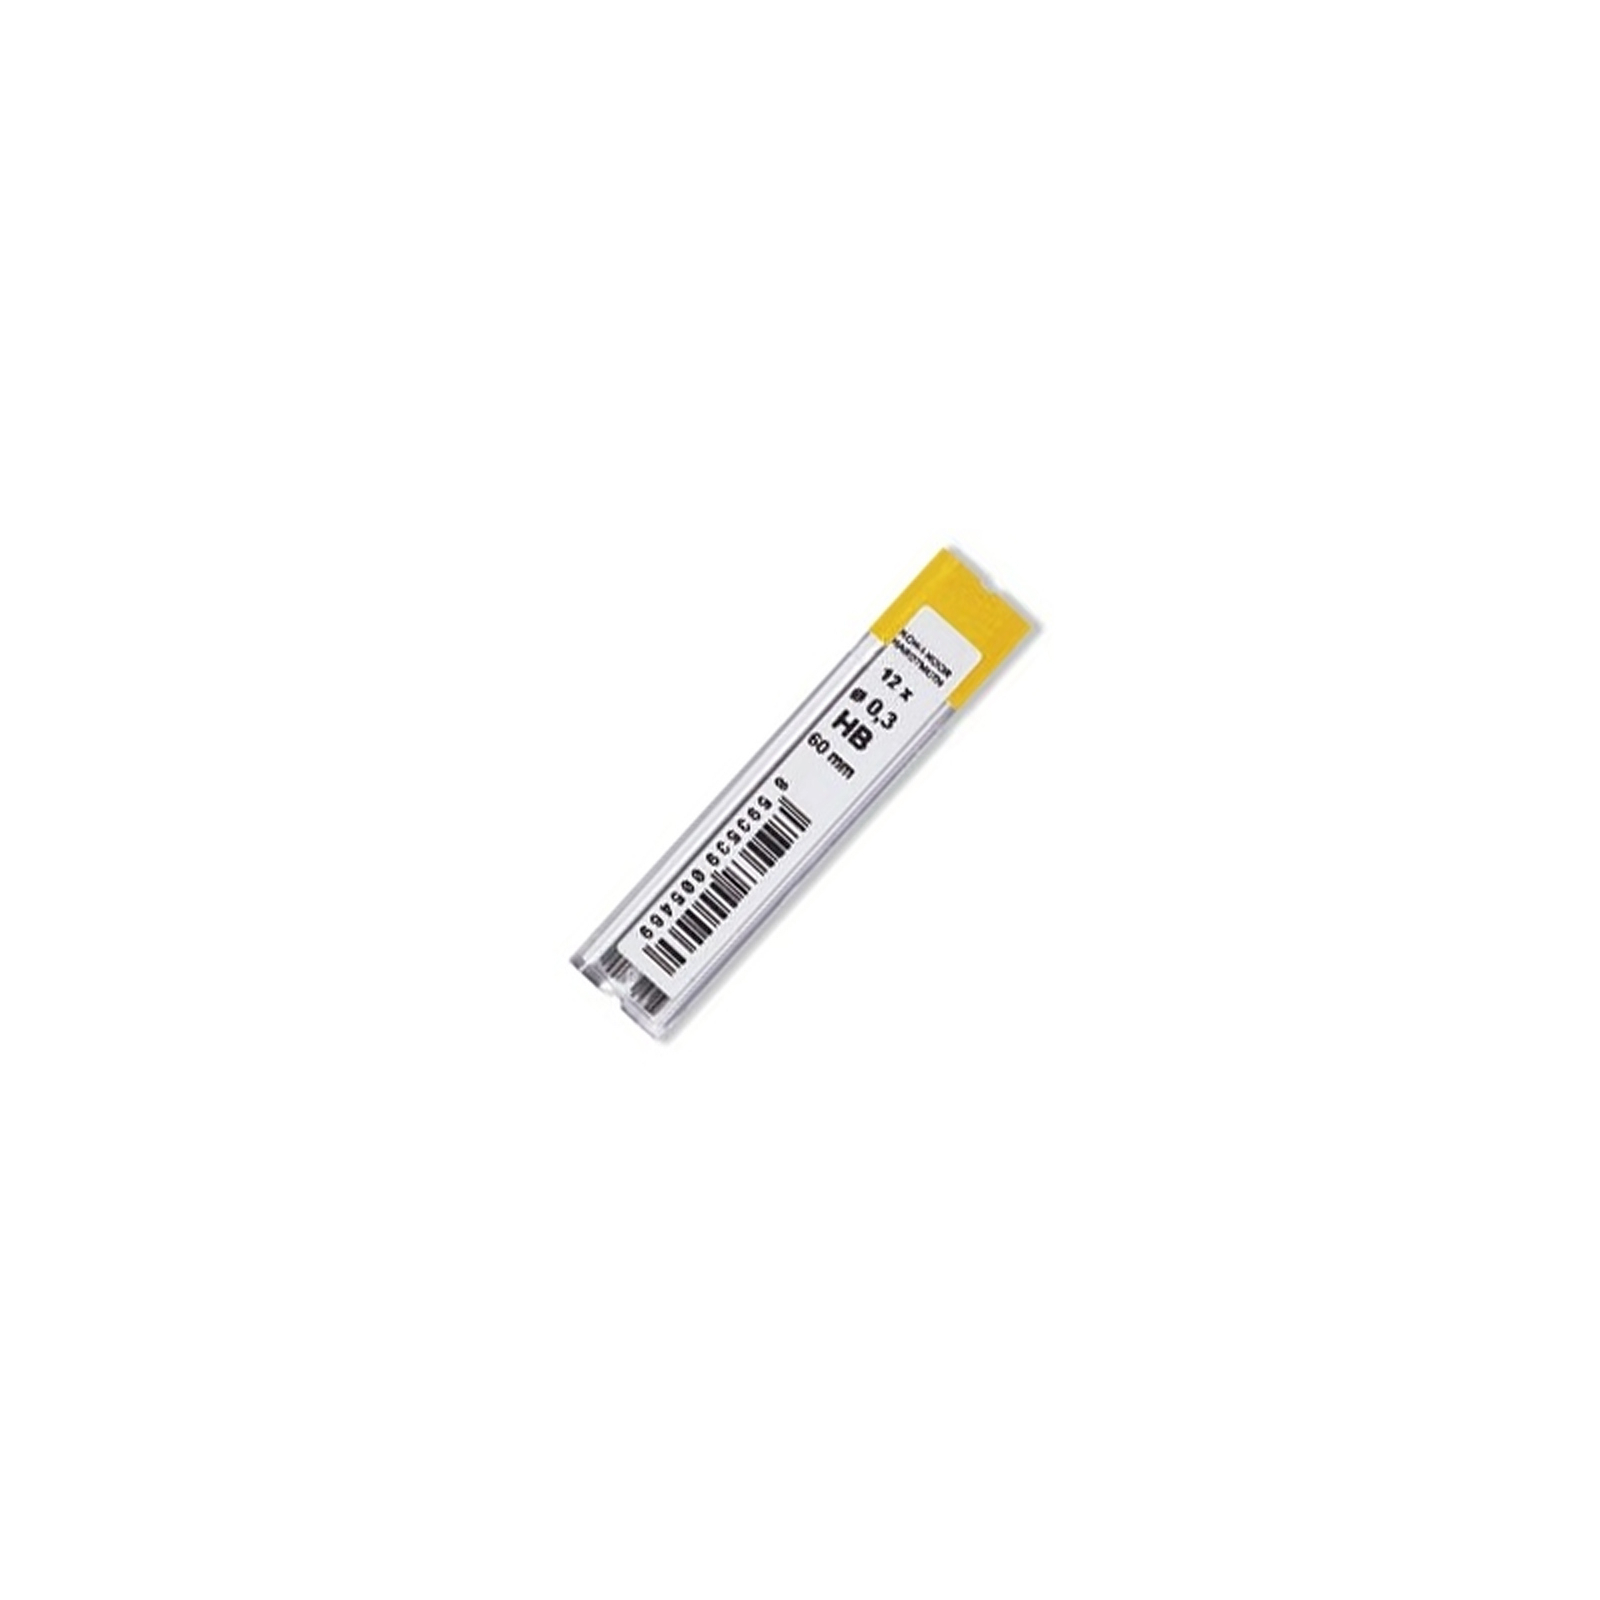 Грифель для механічного олівця Koh-i-Noor 4132.HB, 0.3 мм, 12шт (41320HB006PK)